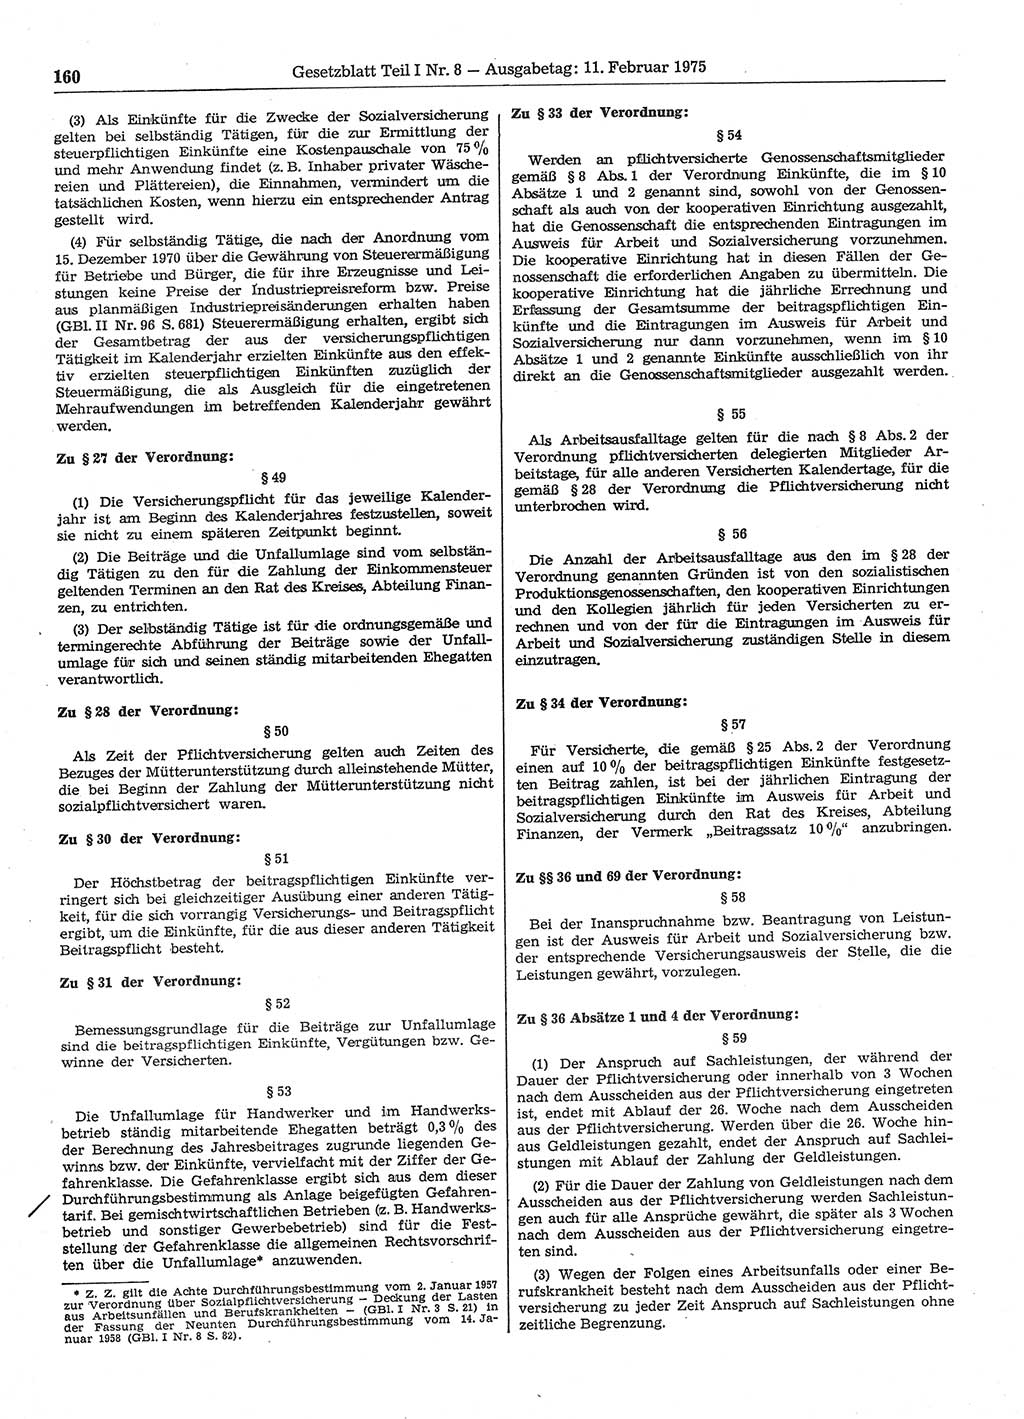 Gesetzblatt (GBl.) der Deutschen Demokratischen Republik (DDR) Teil Ⅰ 1975, Seite 160 (GBl. DDR Ⅰ 1975, S. 160)